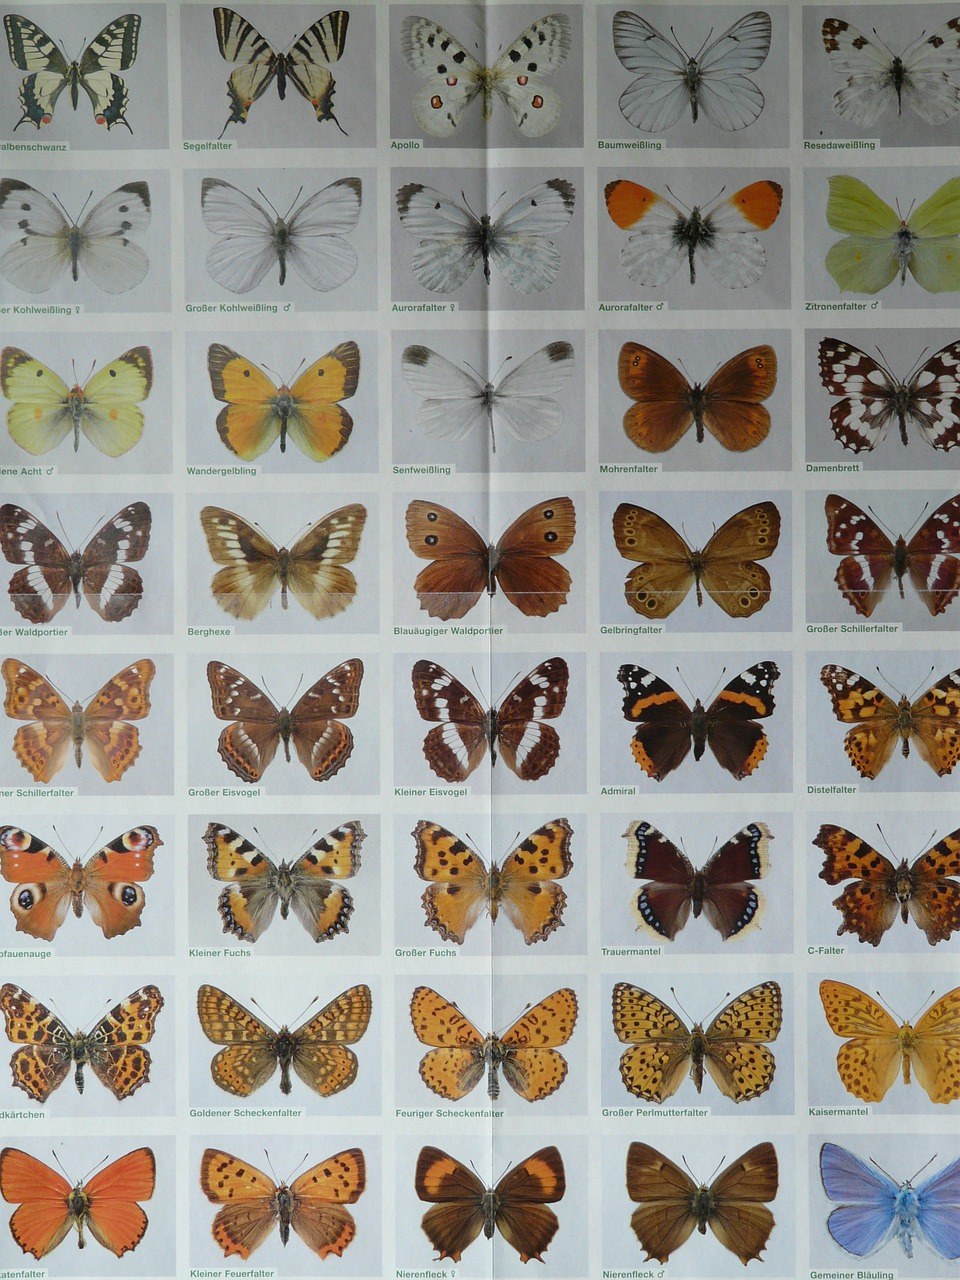 蝴蝶名称和相对应图片图片